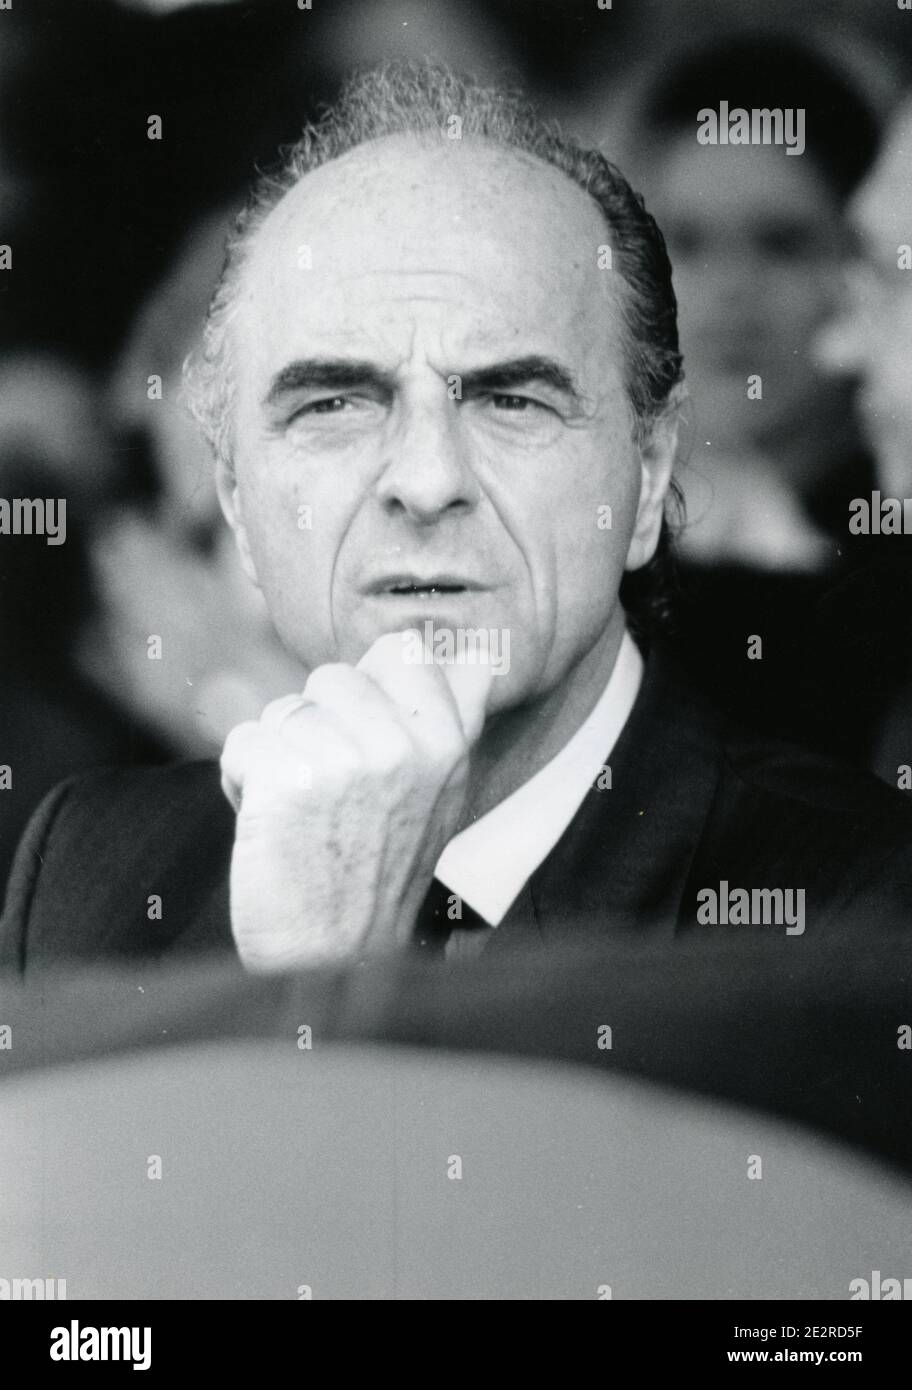 Italian politician and enterpreneur Mario Pescante, 2000s Stock Photo